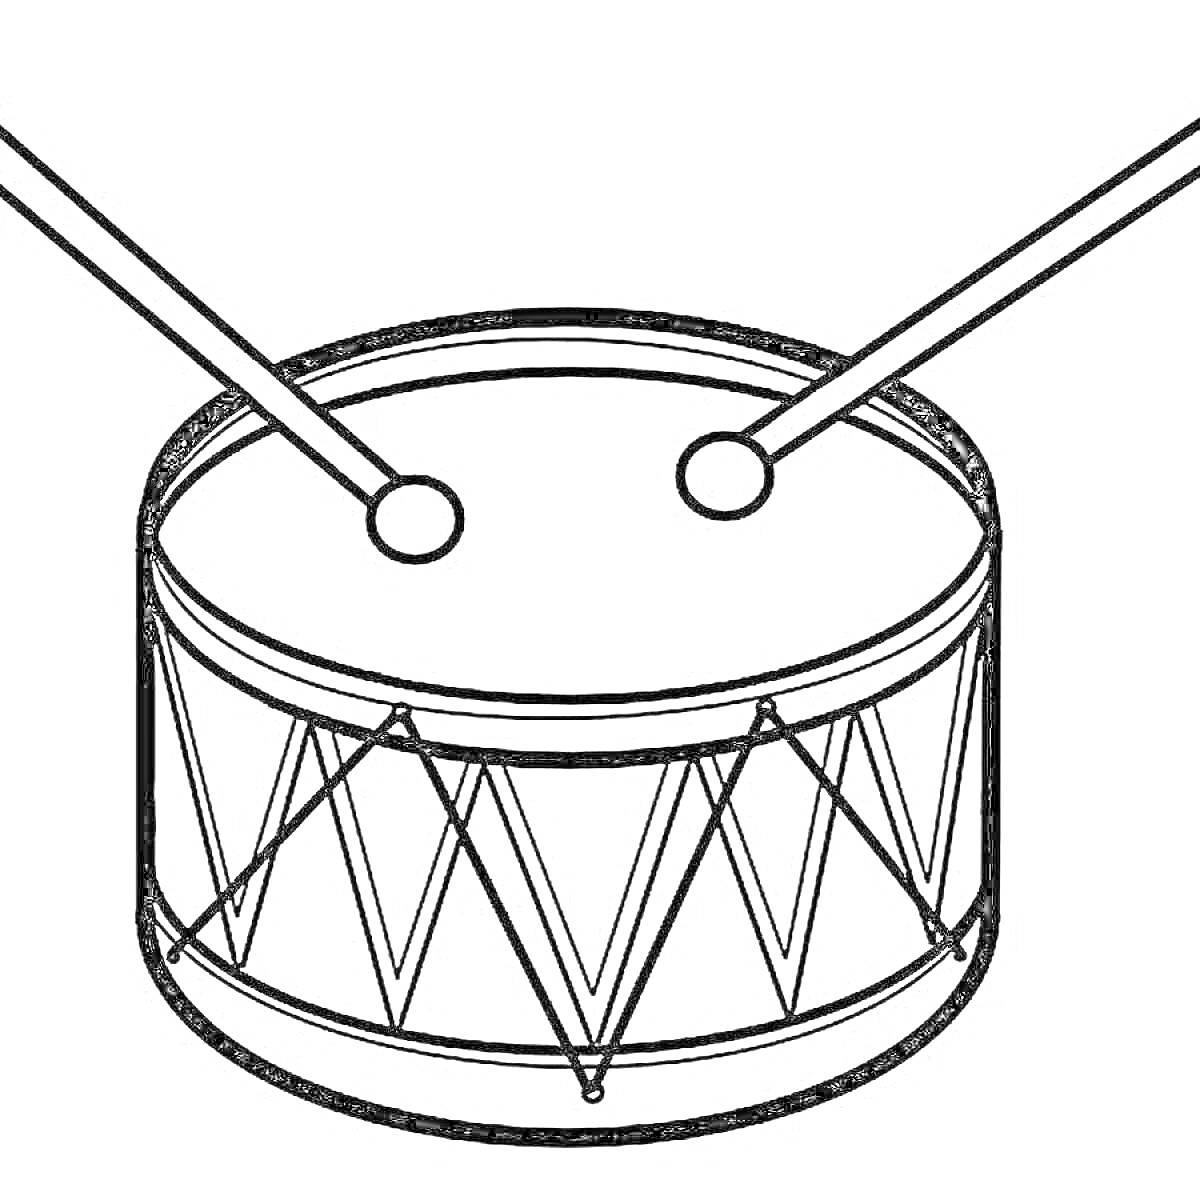 барабан со струнной натяжкой и двумя барабанными палочками